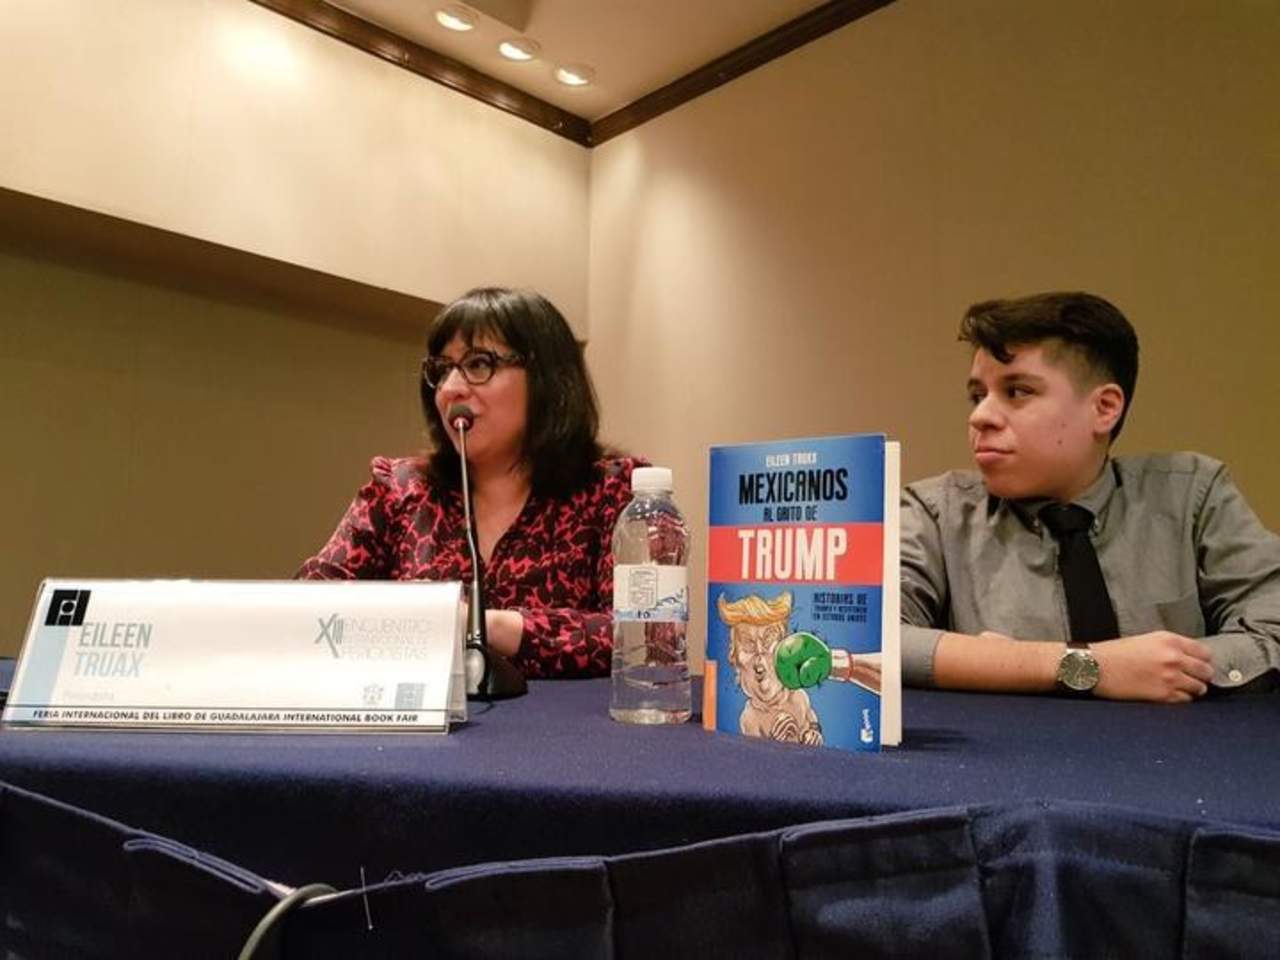 La autora, se mostró feliz de que una de las protagonistas de su libro, la acompañara. De hecho, Mafalda tenía 20 años sin pisar su natal Guadalajara. (DINORA G. SOLÍS)

